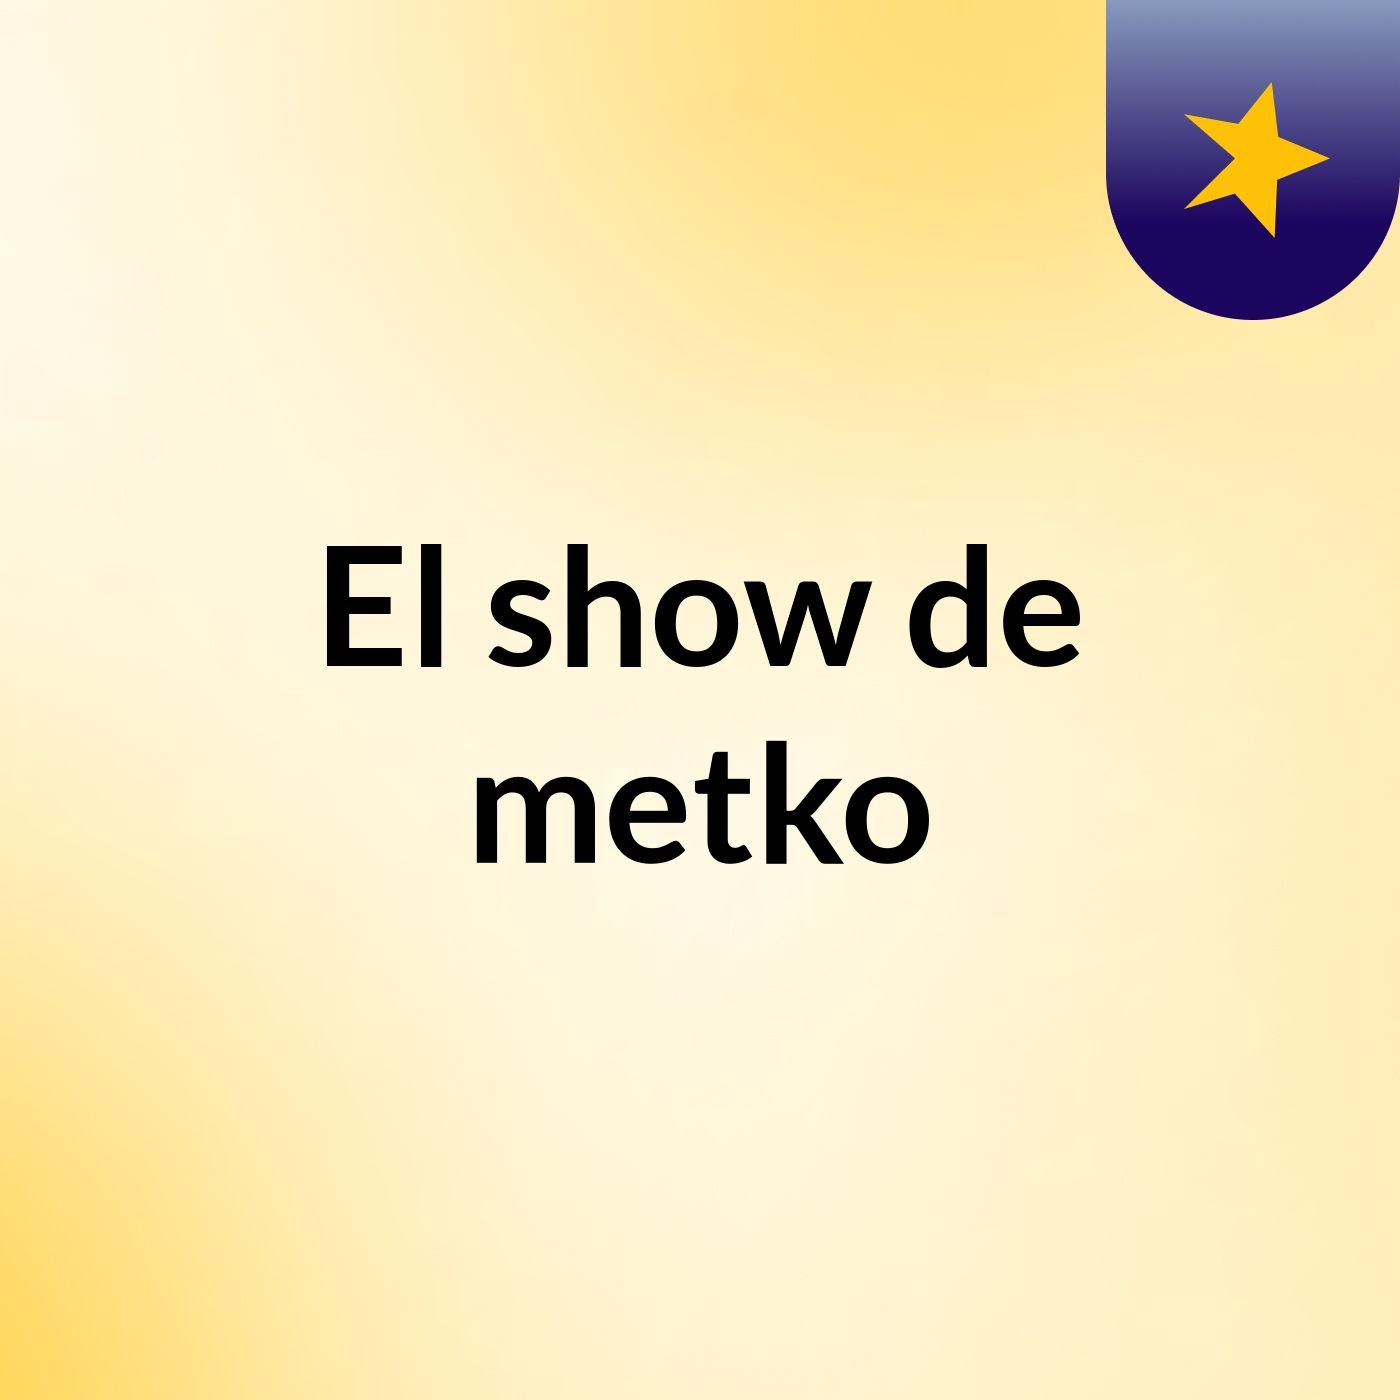 El show de metko